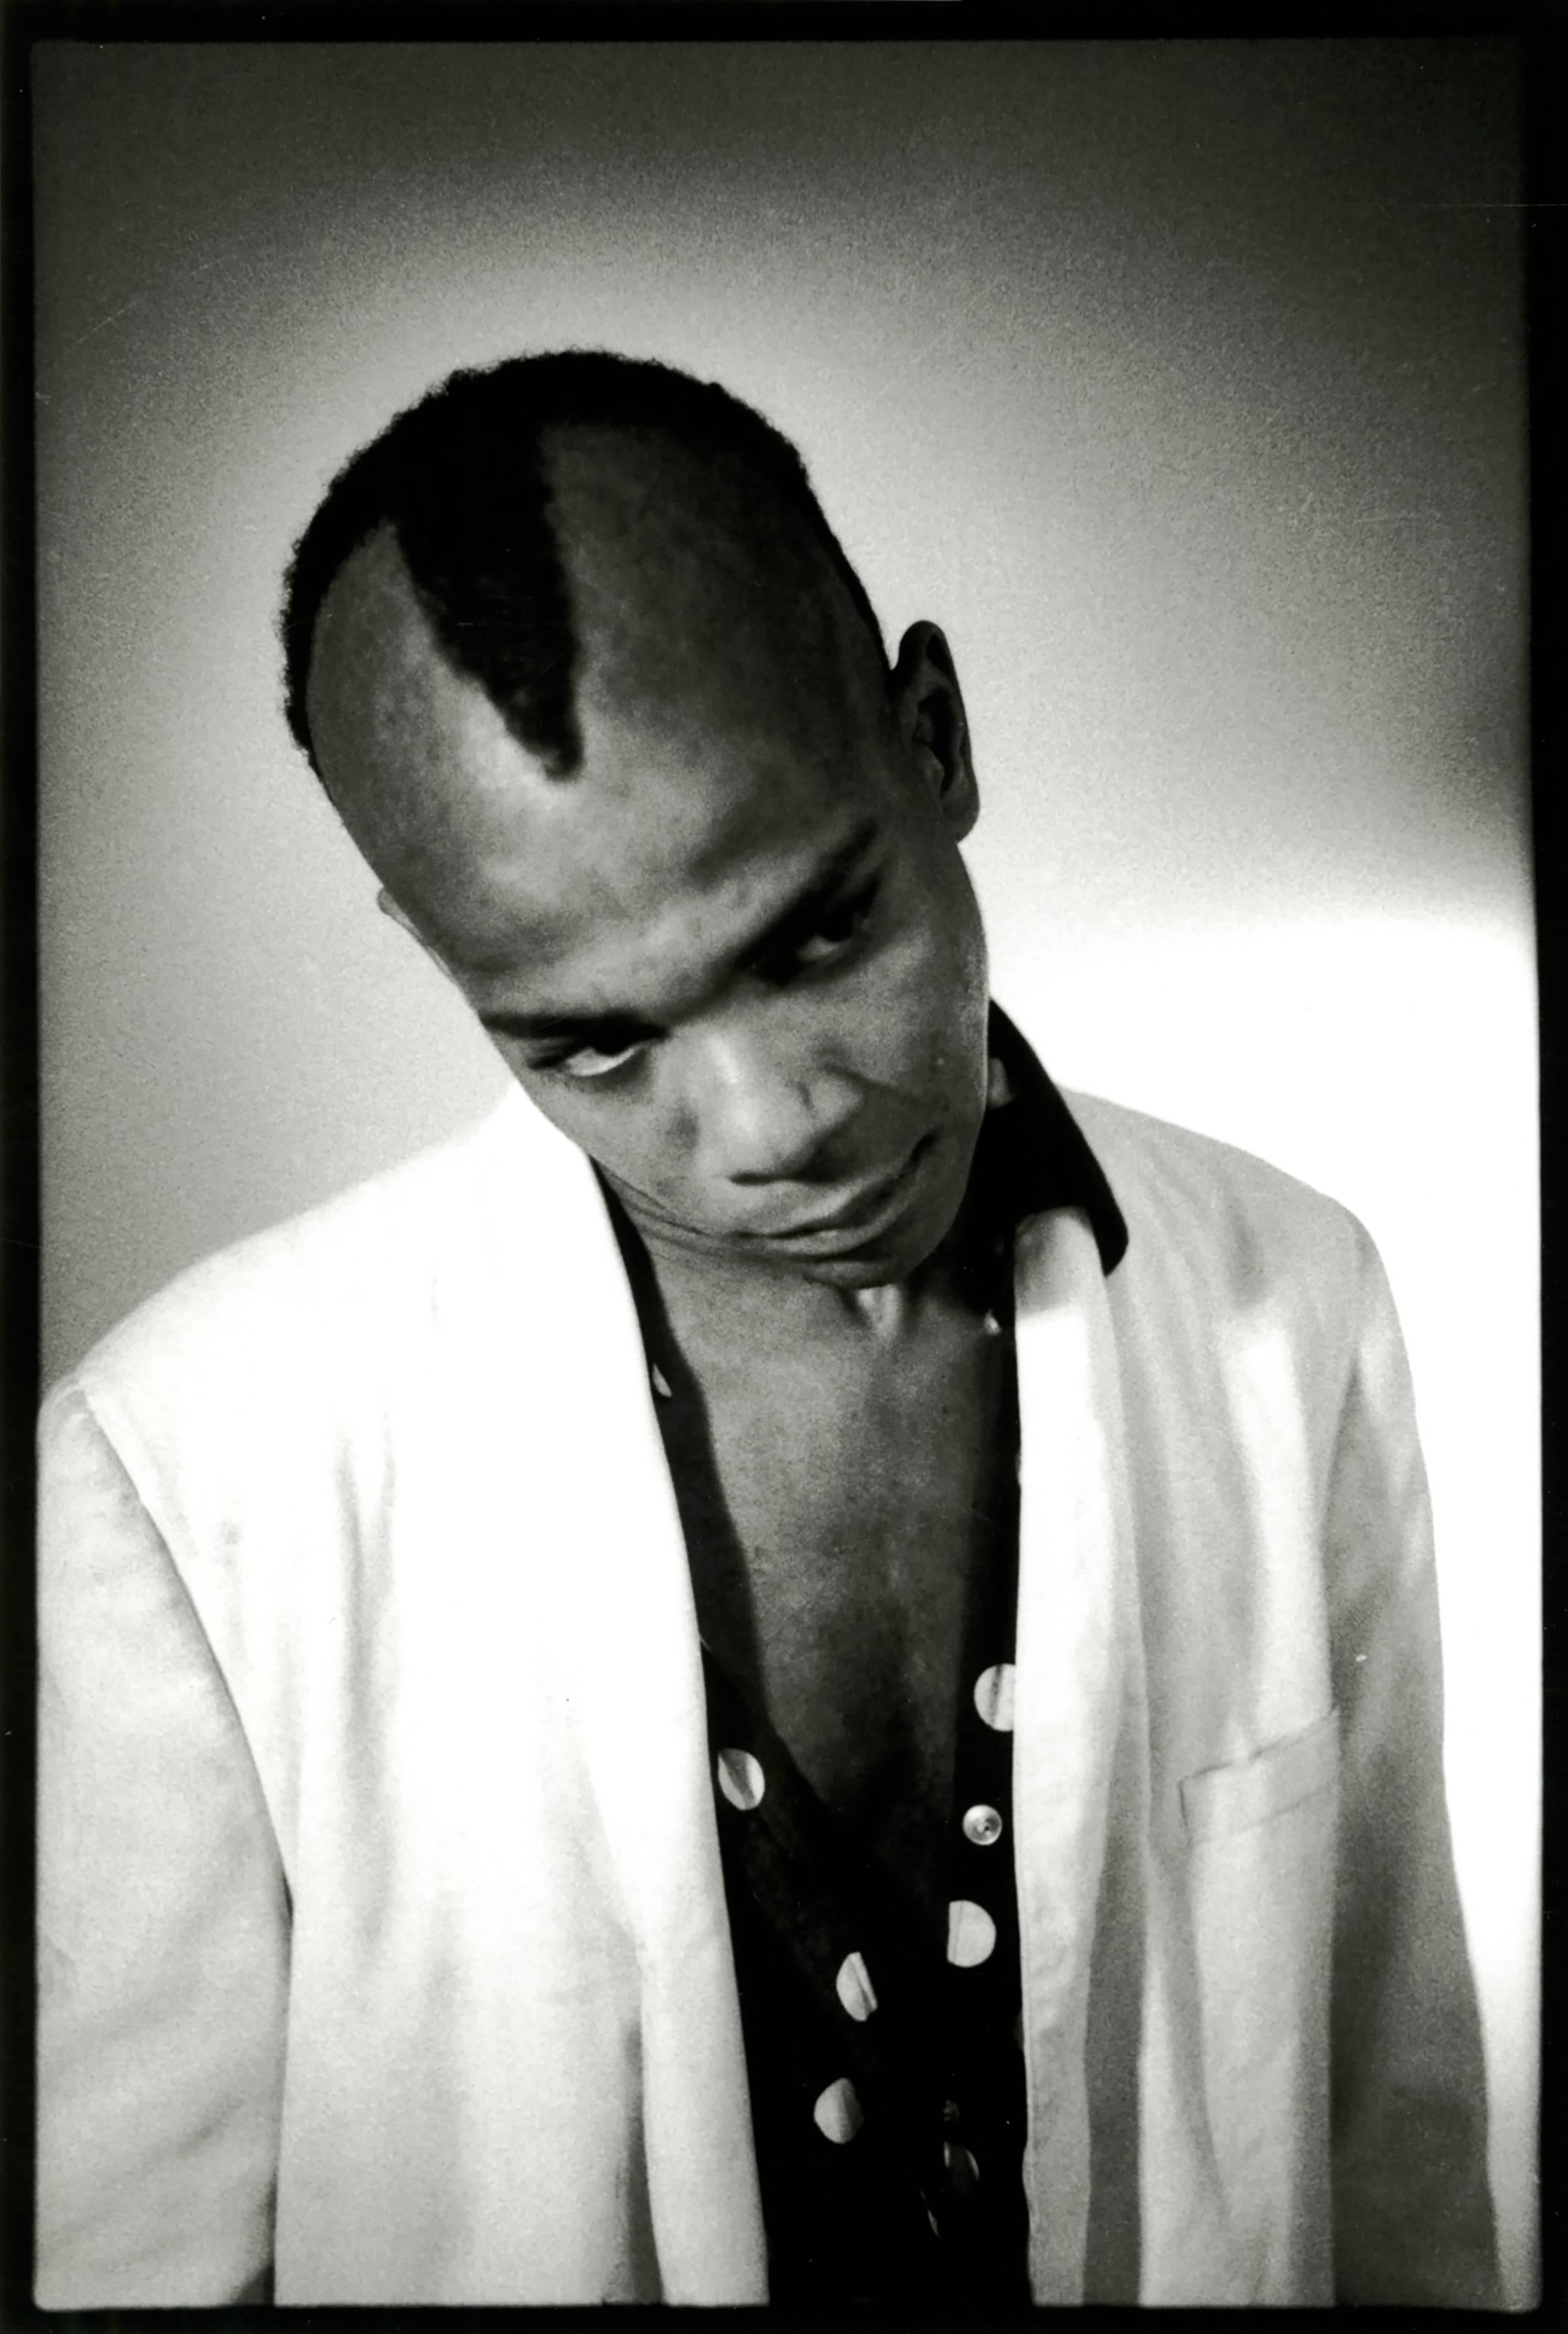 Black and White Photograph Nicholas Taylor - Photographie de Jean-Michel Basquiat de 1979 (Basquiat de Nick Taylor Gray)